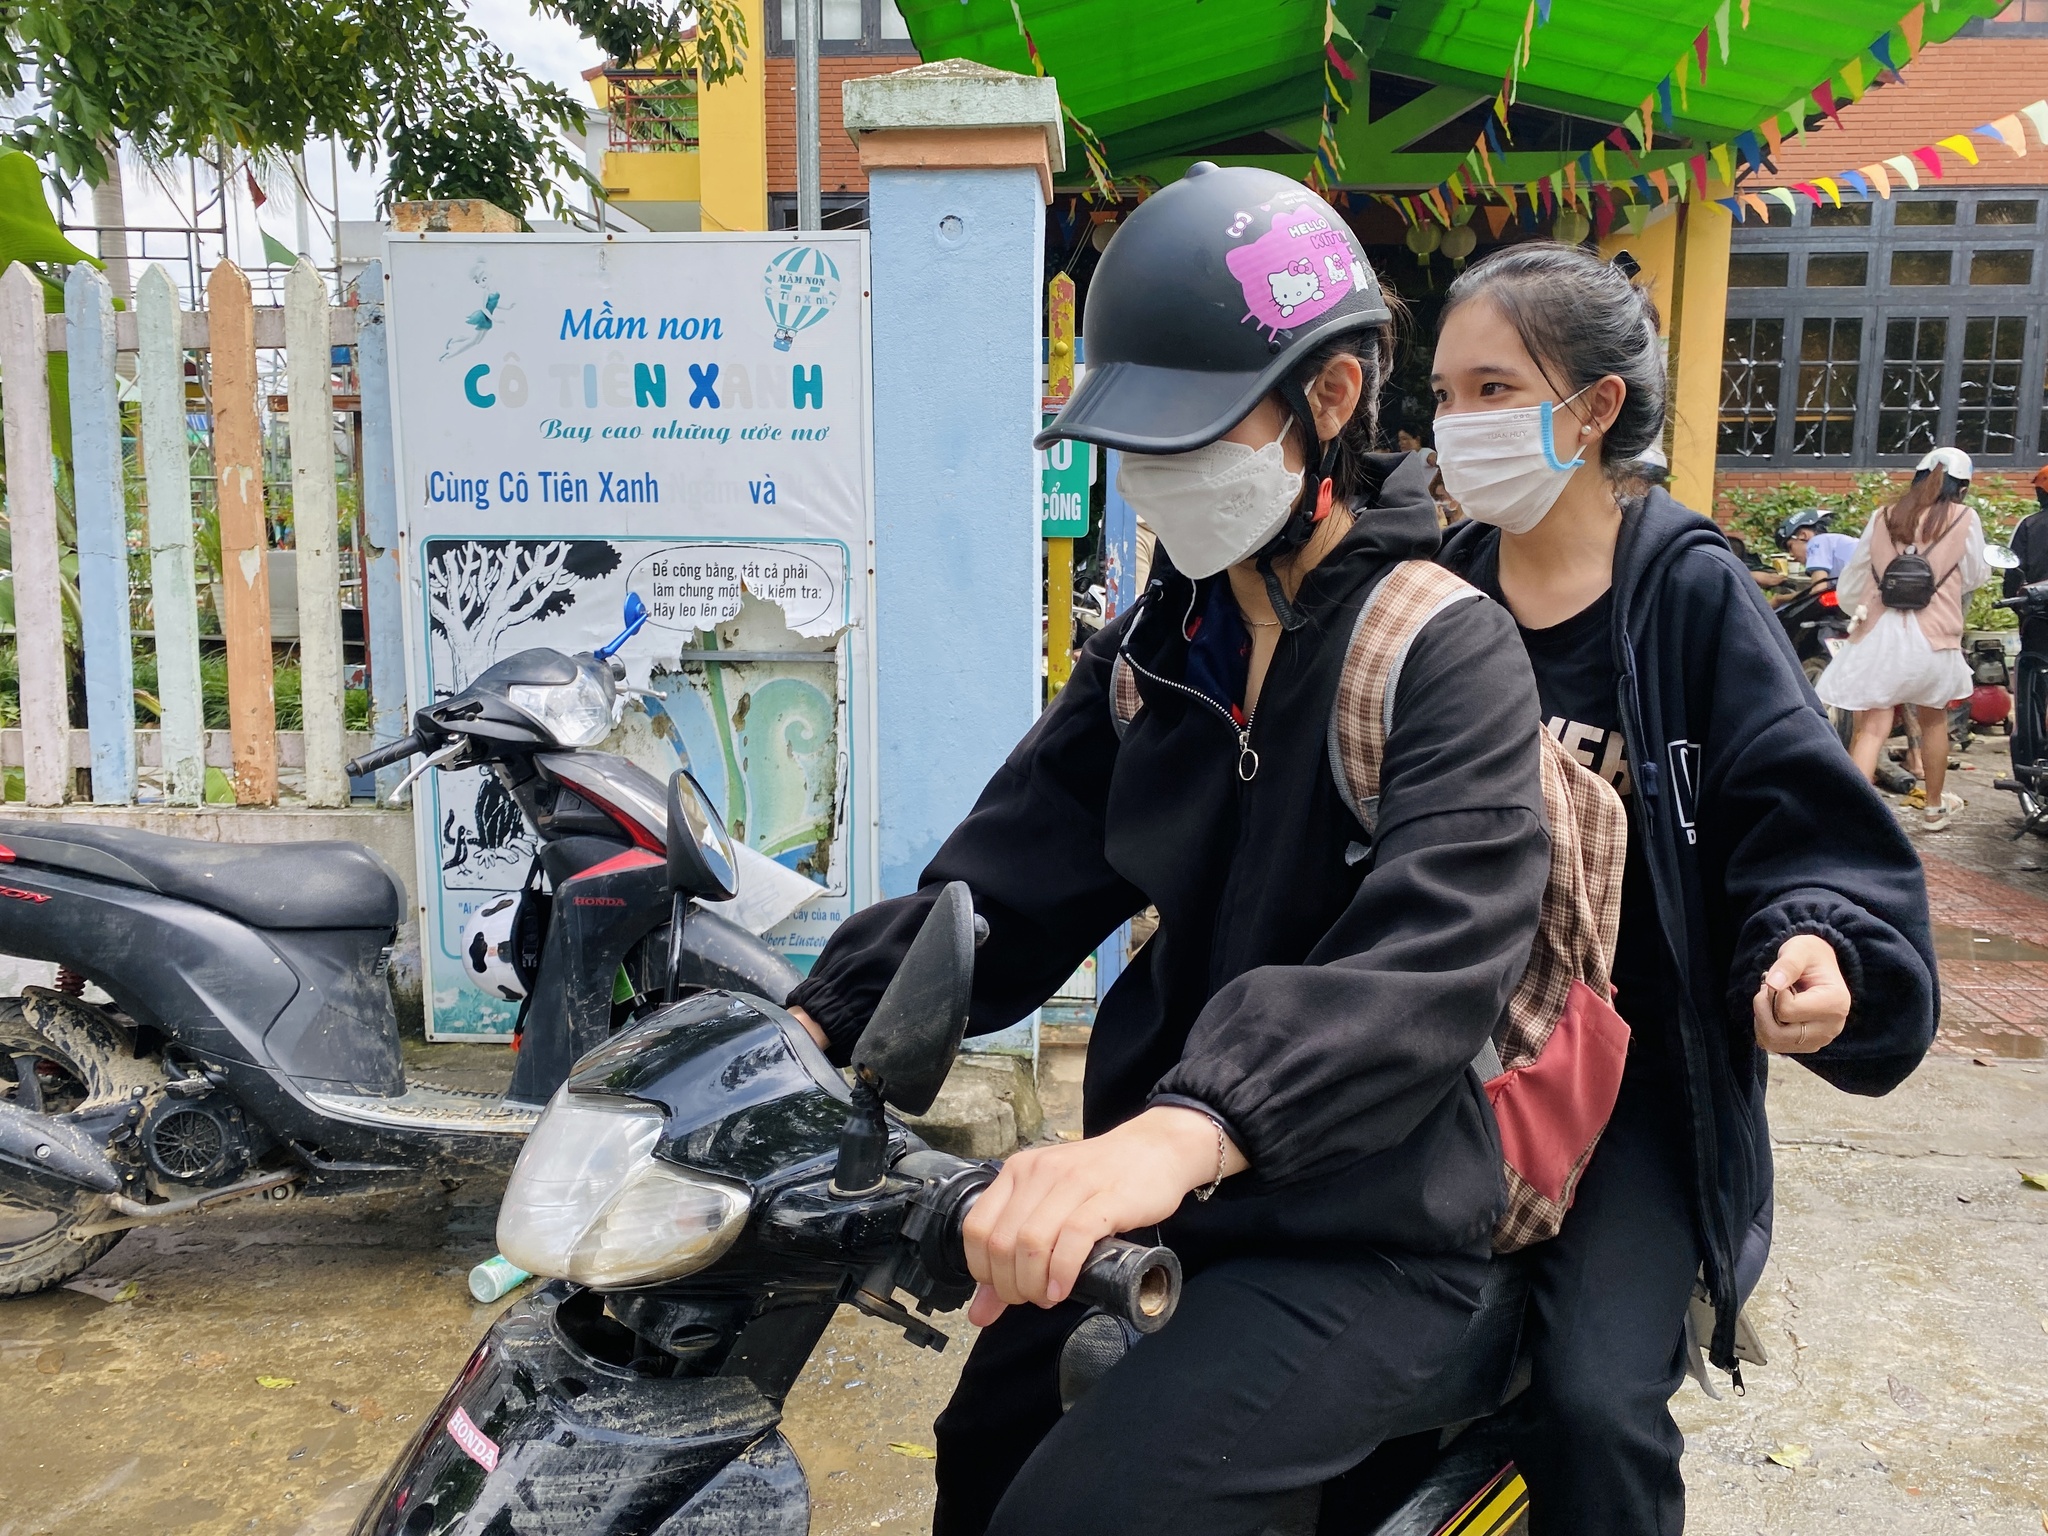 Nhóm thợ xứ Quảng ăn cơm hộp, ngủ nhà nghỉ sửa xe miễn phí cho sinh viên - ảnh 7